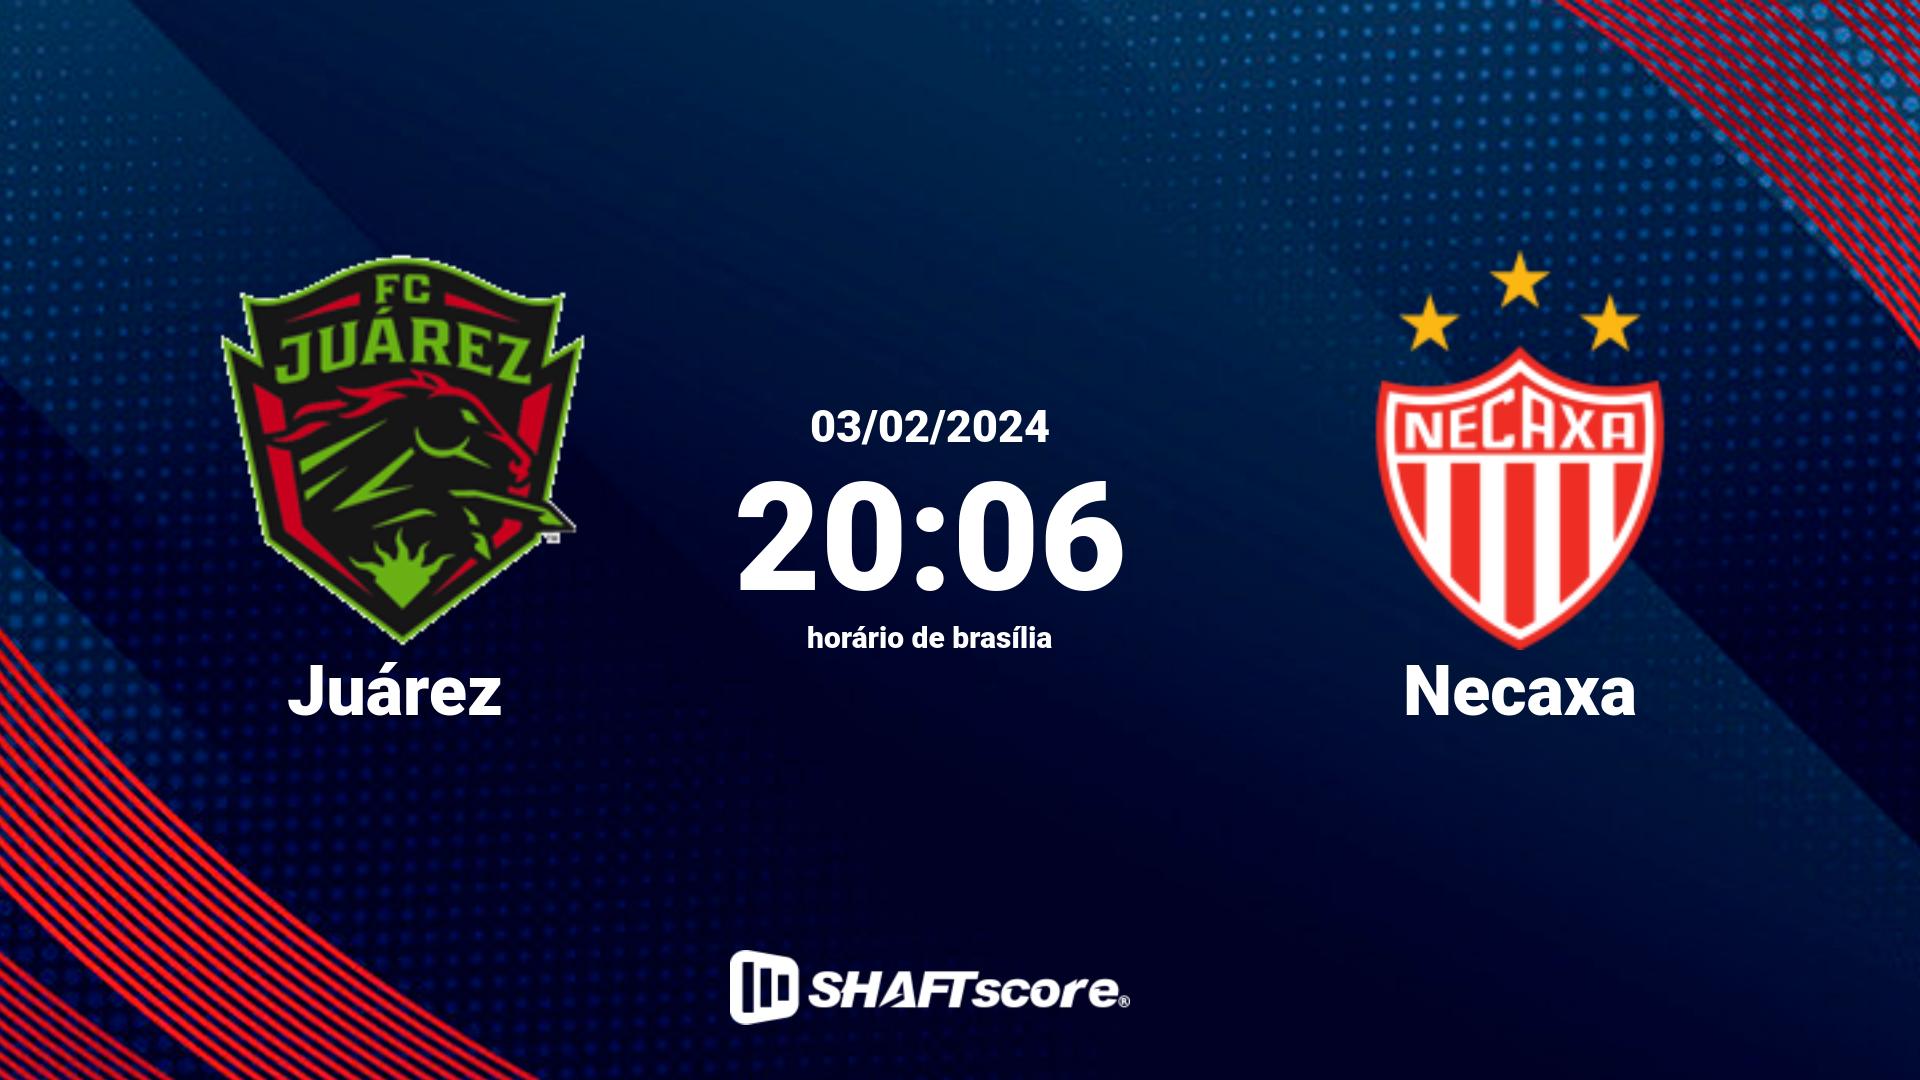 Estatísticas do jogo Juárez vs Necaxa 03.02 20:06